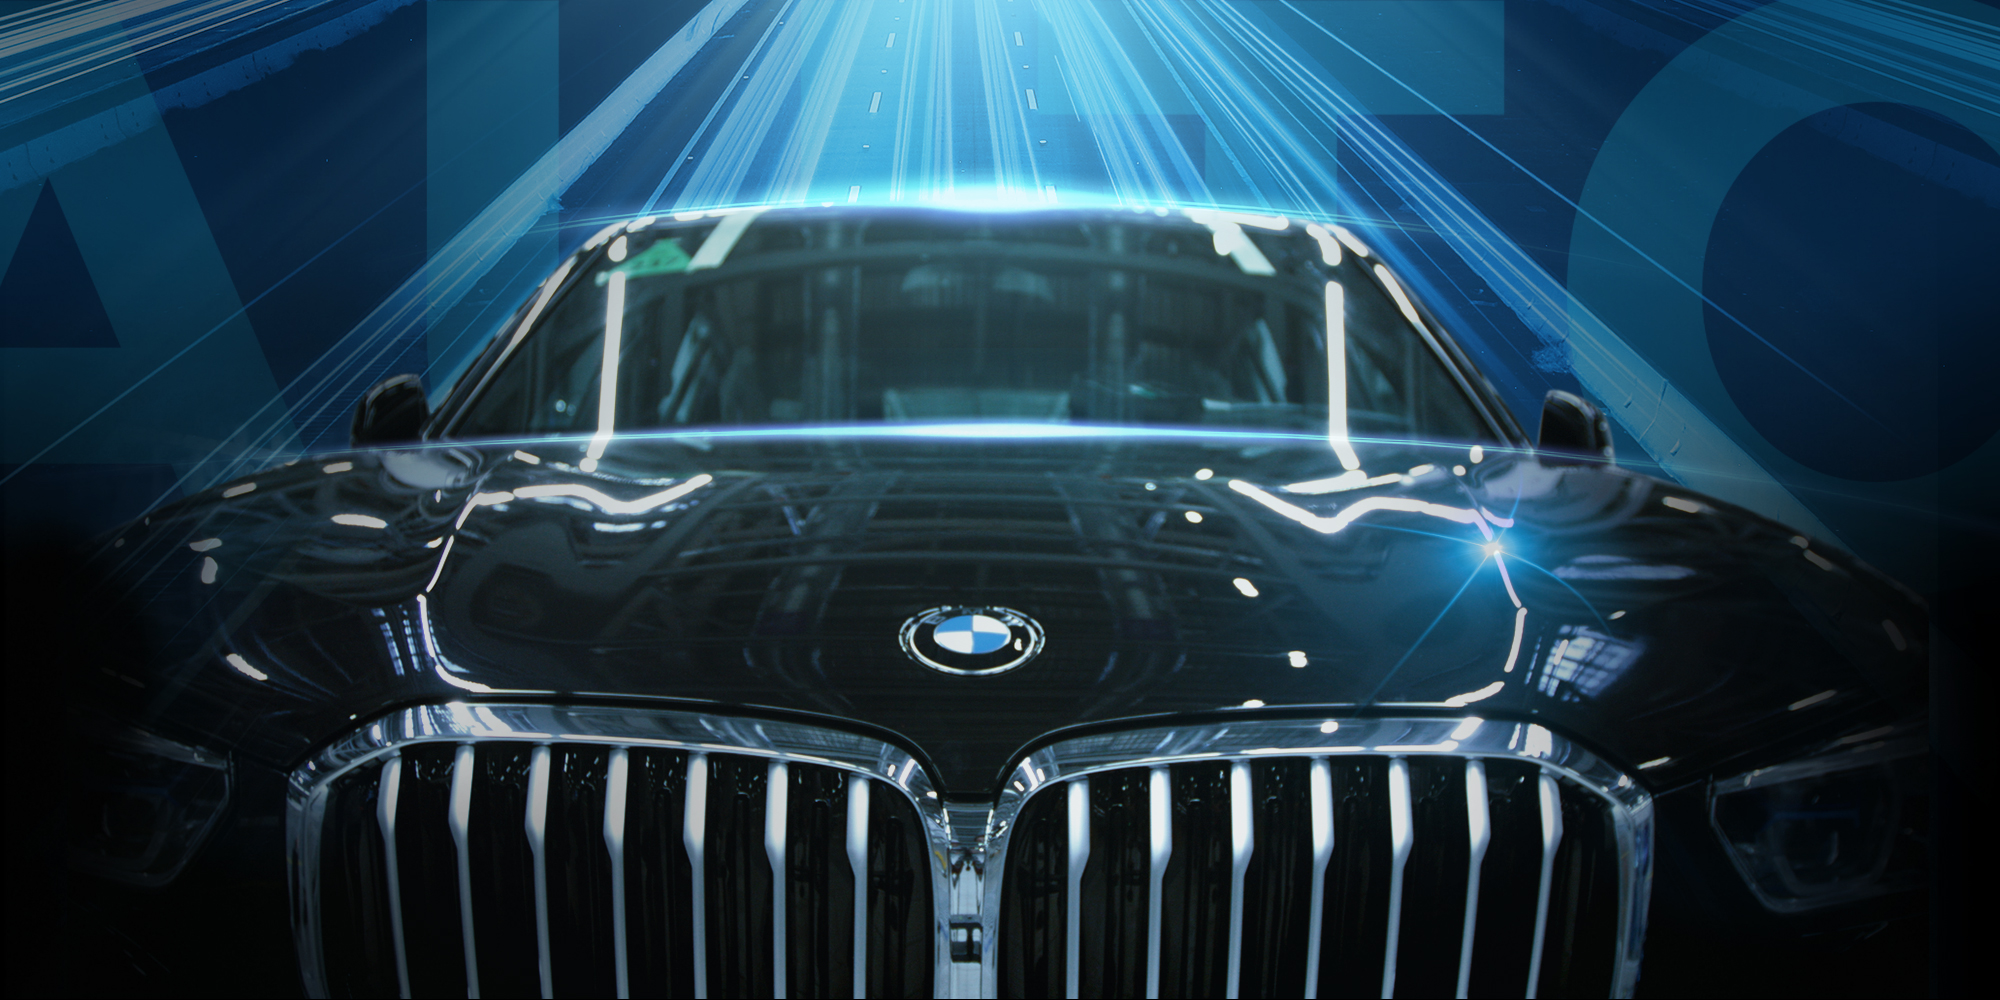 긱플러스, BMW 생산 공장 자동화 추진으로 자동차 스마트 제조의 미래를 이끌다